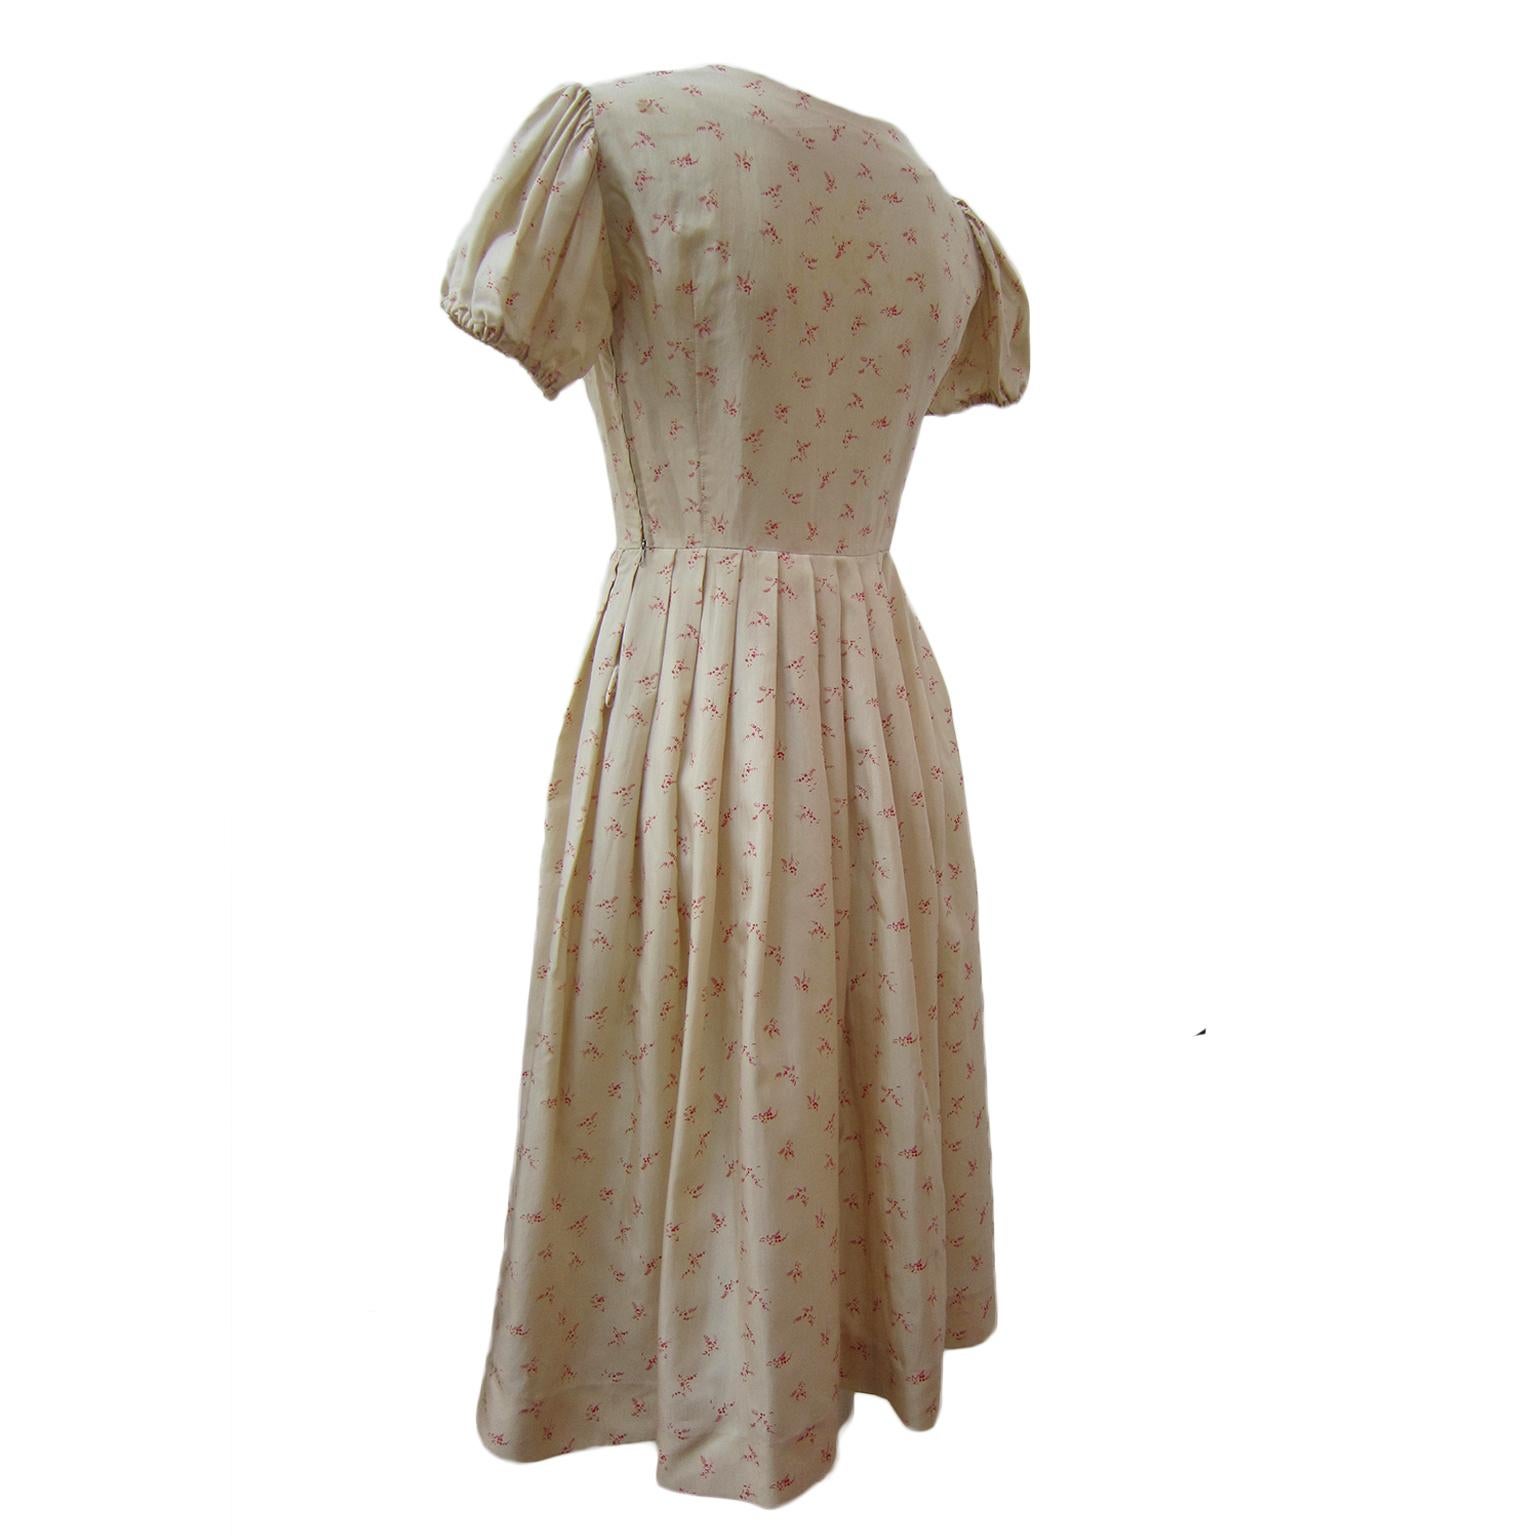 Hübsches kurzes Kleid mit Puffärmeln aus den 1950er Jahren. Das Material mit beigefarbenem Grundton hat einen fast teeähnlichen Effekt und ist durchgehend mit roten Blumen bedruckt. Tailliert geschnittenes Mieder mit Schleifen am Ausschnitt. Schicke